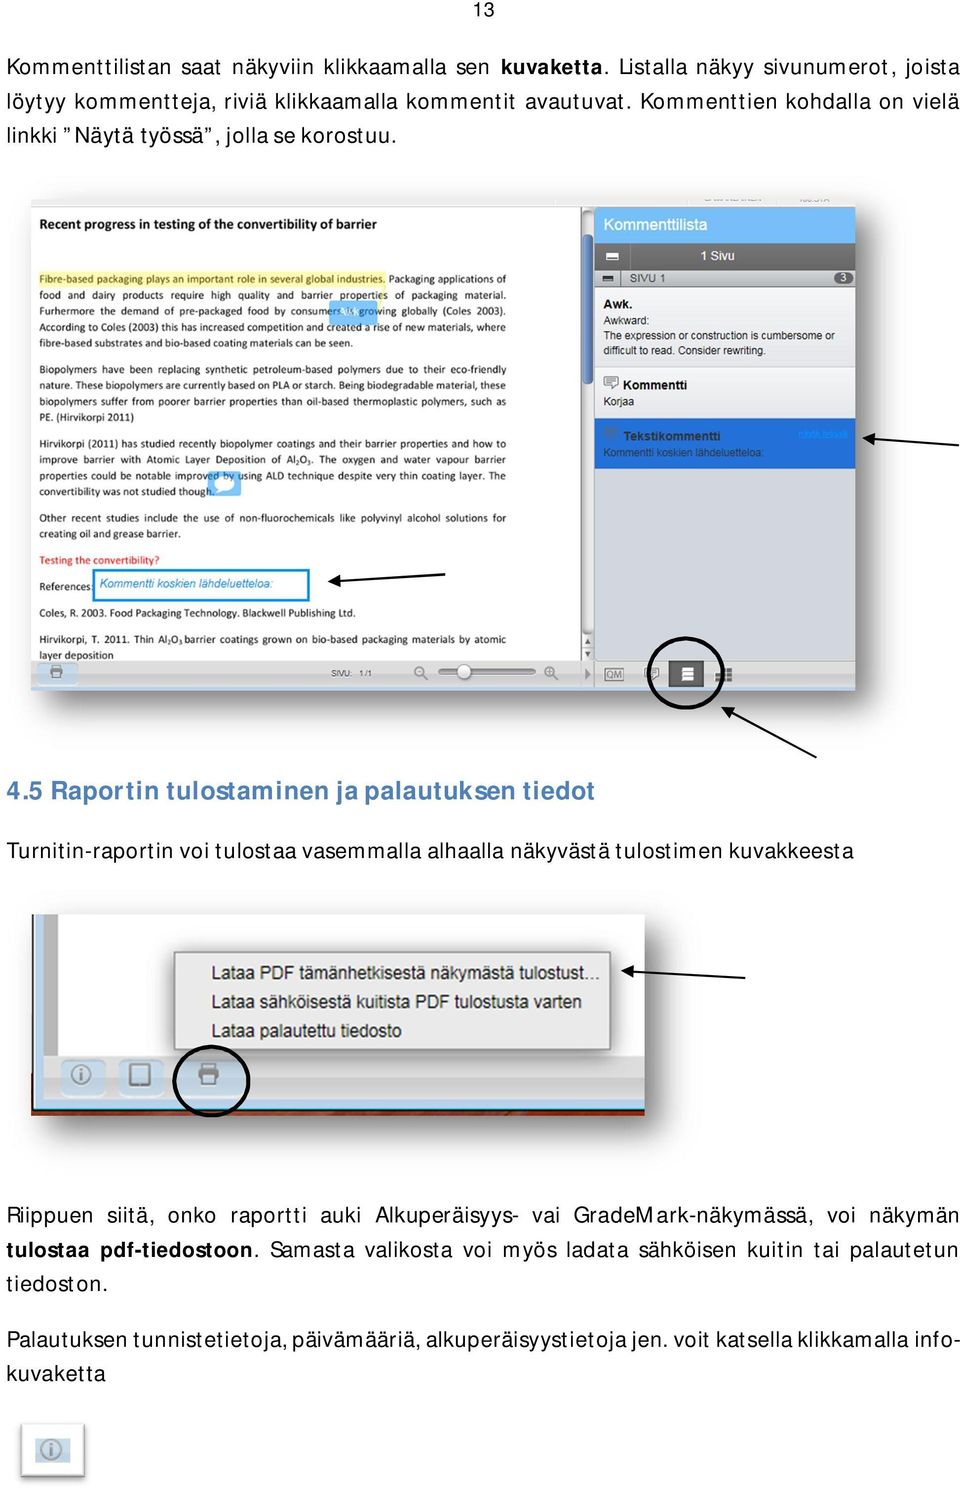 5Raportintulostaminenjapalautuksentiedot Turnitin-raportin voi tulostaa vasemmalla alhaalla näkyvästä tulostimen kuvakkeesta Riippuen siitä, onko raportti auki